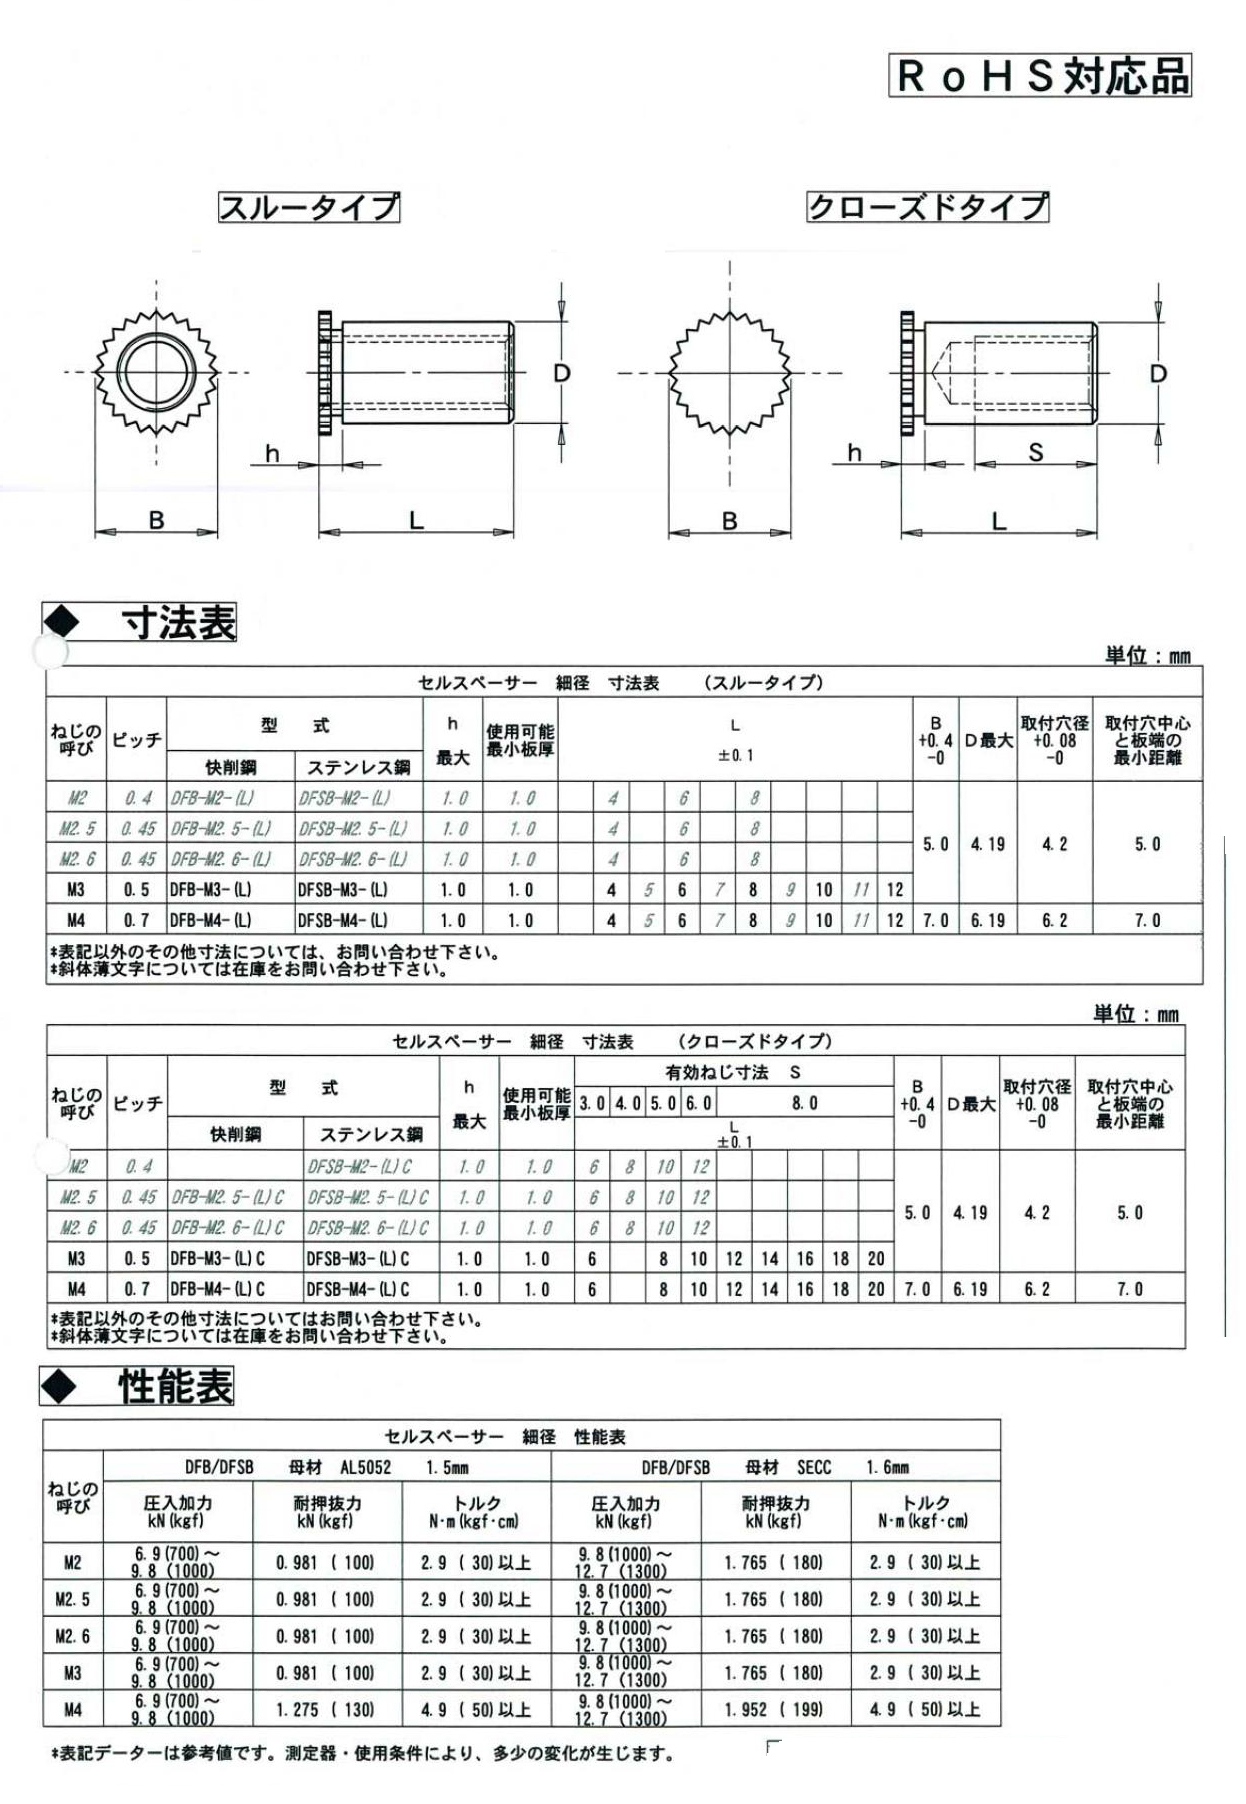 セルスペーサー 表面処理(三価ホワイト(白)) 規格(DFB-M3-16S) 入数(1000) 通販